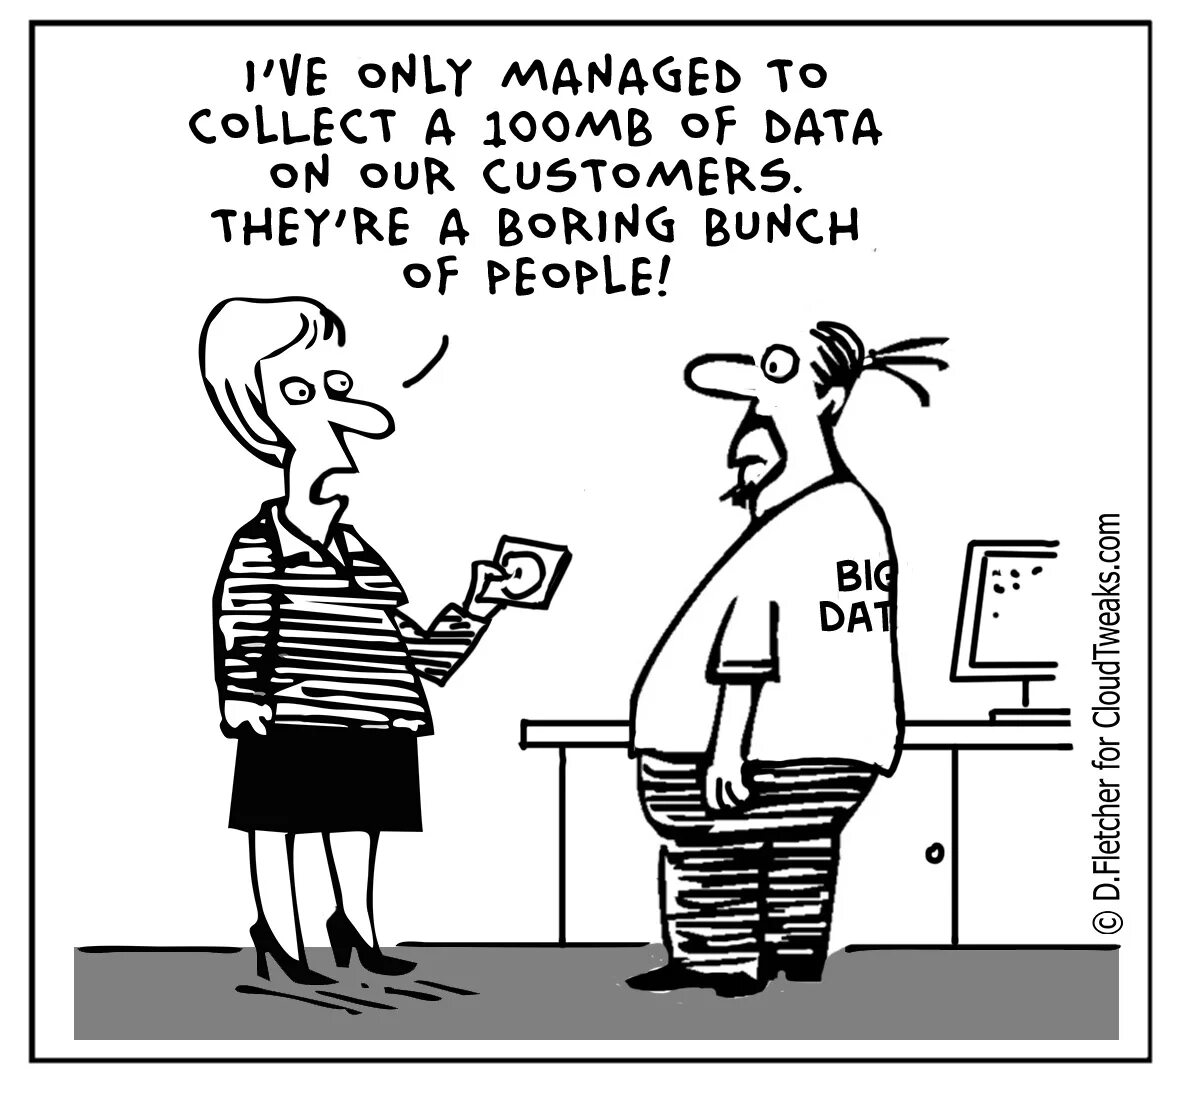 Only managers. Big data шутки. Big data прикол. Большие данные Мем. Big data Мем.